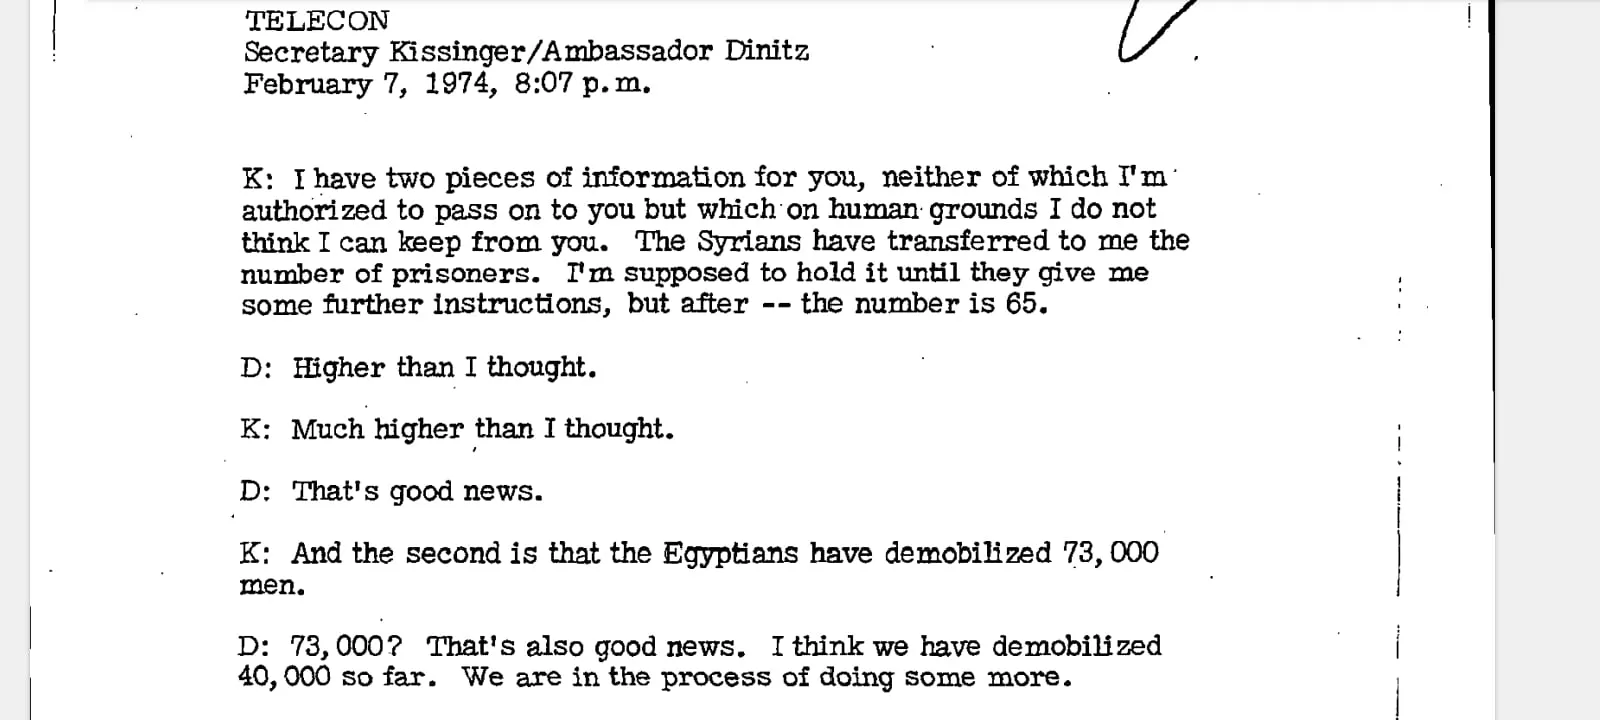 اتصال هاتفي بين كيسنجر والسفير الإسرائيلي سيمكا دينيتز. ٦ فبراير ١٩٧٤. وزراة الخارجية الأمريكية